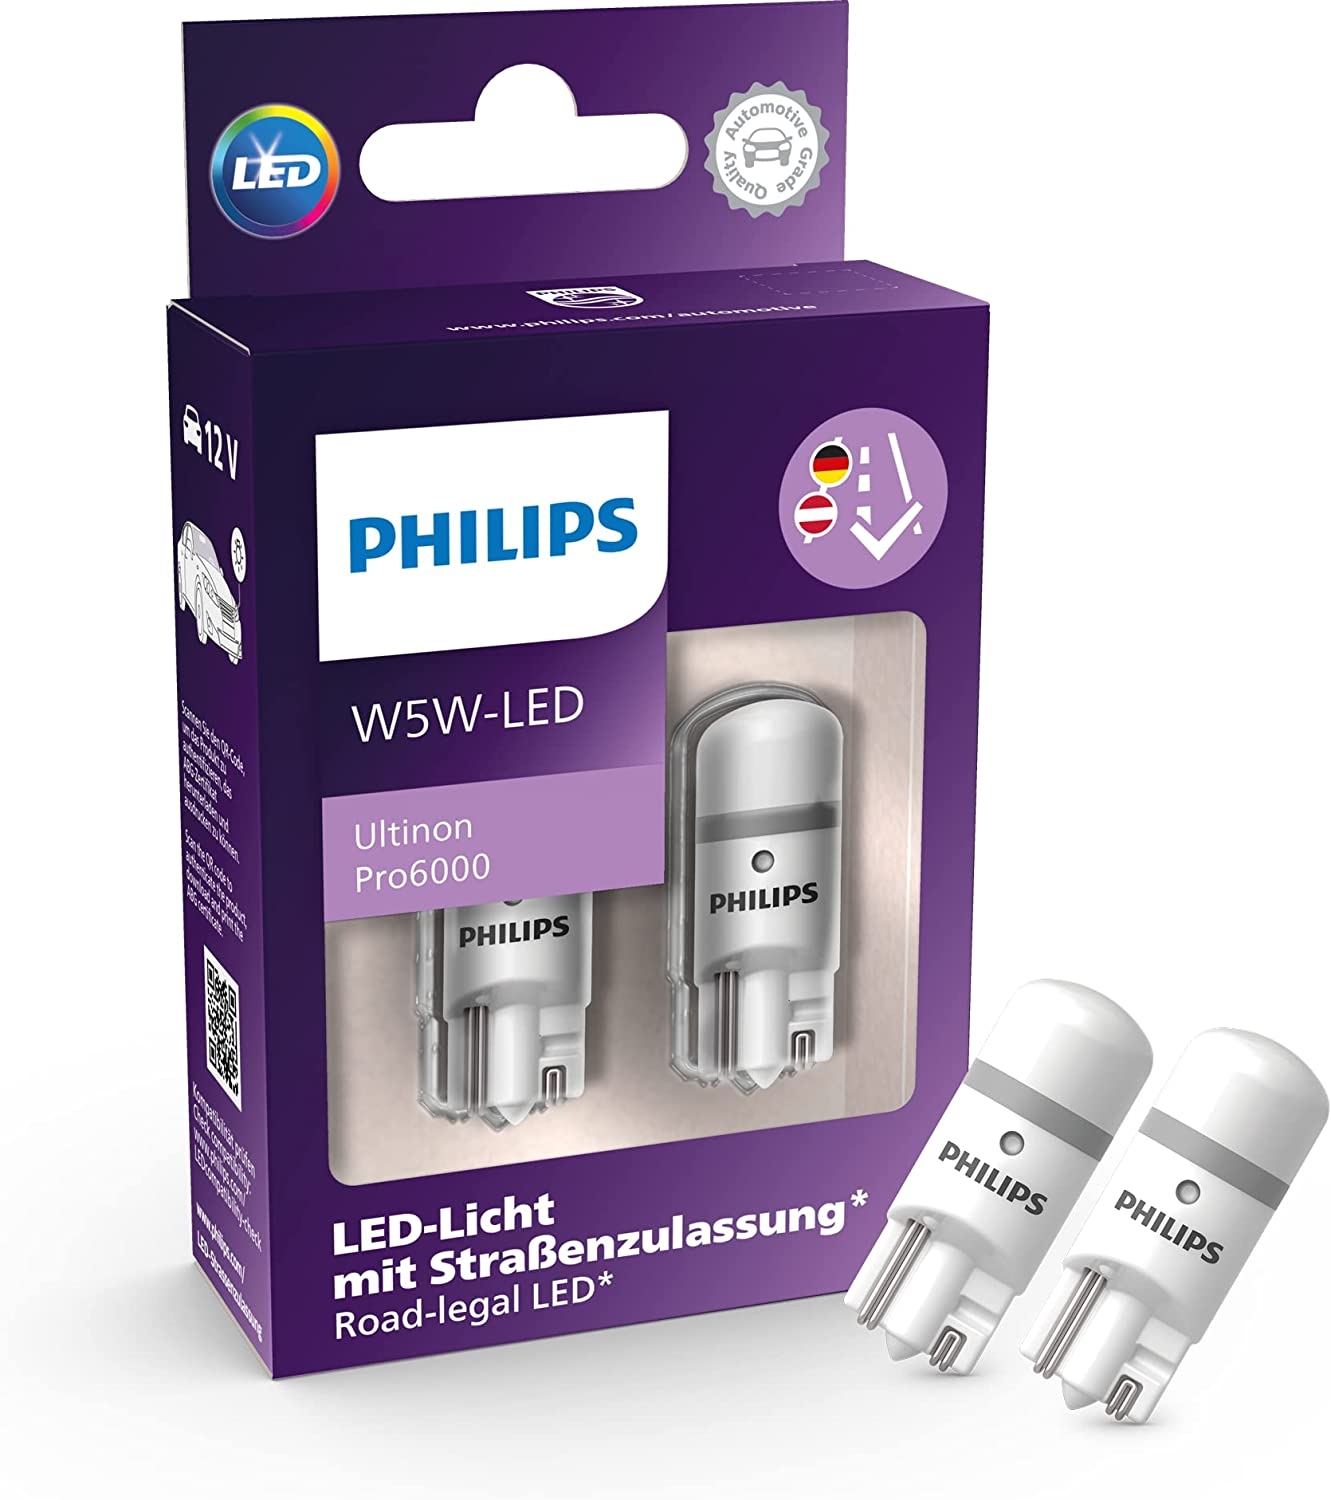 Motorradscheinwerferlampe Philips H7 Halogen Crystalvision 12V 55W